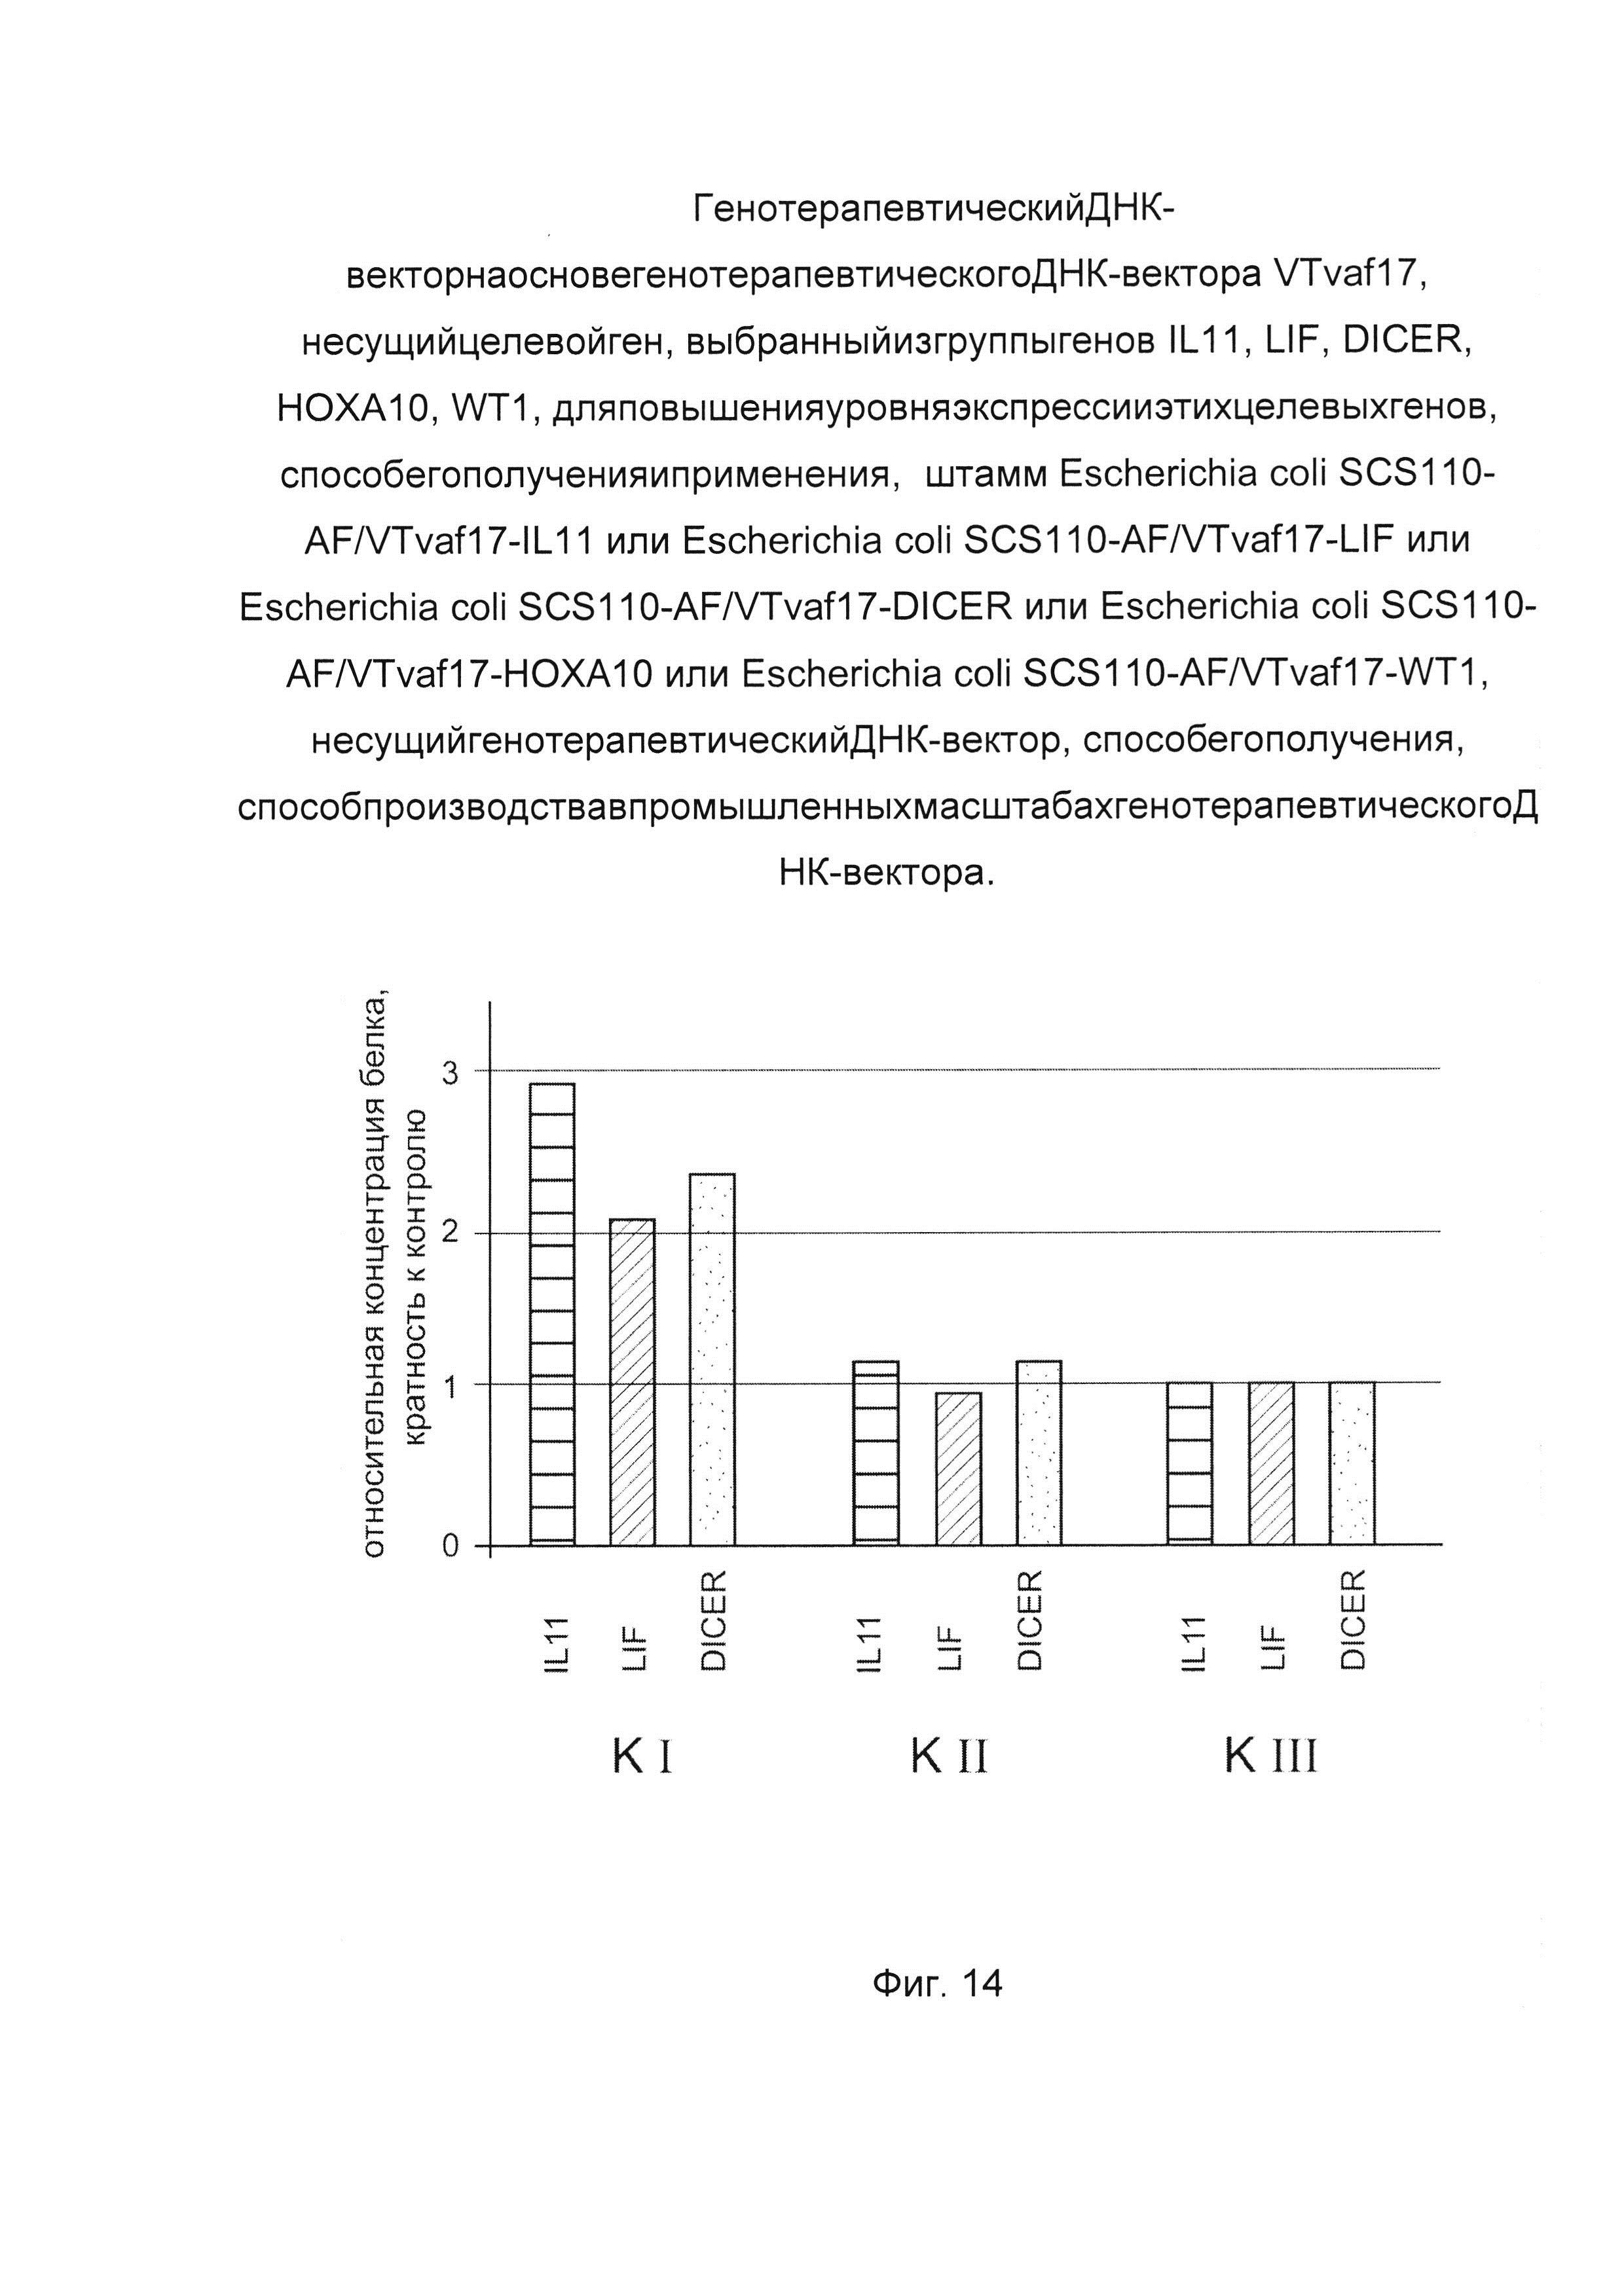 Генотерапевтический ДНК-вектор на основе генотерапевтического ДНК-вектора VTvaf17, несущий целевой ген, выбранный из группы генов IL11, LIF, DICER, HOXA10, WT1, для повышения уровня экспрессии этих целевых генов, способ его получения и применения, штамм Escherichia coli SCS110-AF/VTvaf17-IL11, или Escherichia coli SCS110-AF/VTvaf17-LIF, или Escherichia coli SCS110-AF/VTvaf17-DICER, или Escherichia coli SCS110-AF/VTvaf17-HOXA10, или Escherichia coli SCS110-AF/VTvaf17-WT1, несущий генотерапевтический ДНК-вектор, способ его получения, способ производства в промышленных масштабах генотерапевтического ДНК-вектора